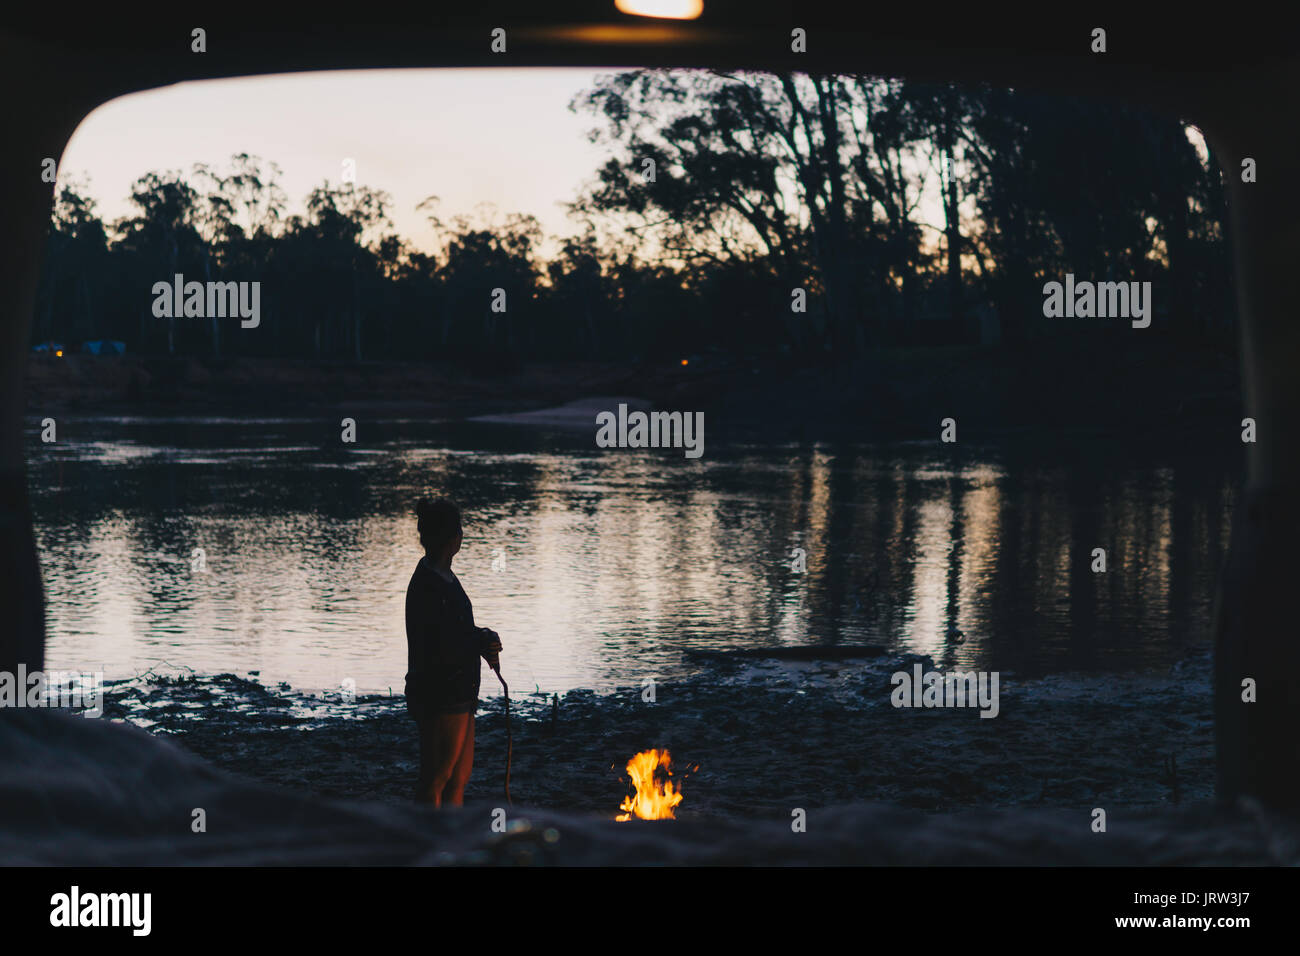 Camp de l'après-midi par le fleuve Murray dans la lumière dorée avec une femme ayant tendance à l'incendie à la recherche de la voiture familiale. Banque D'Images